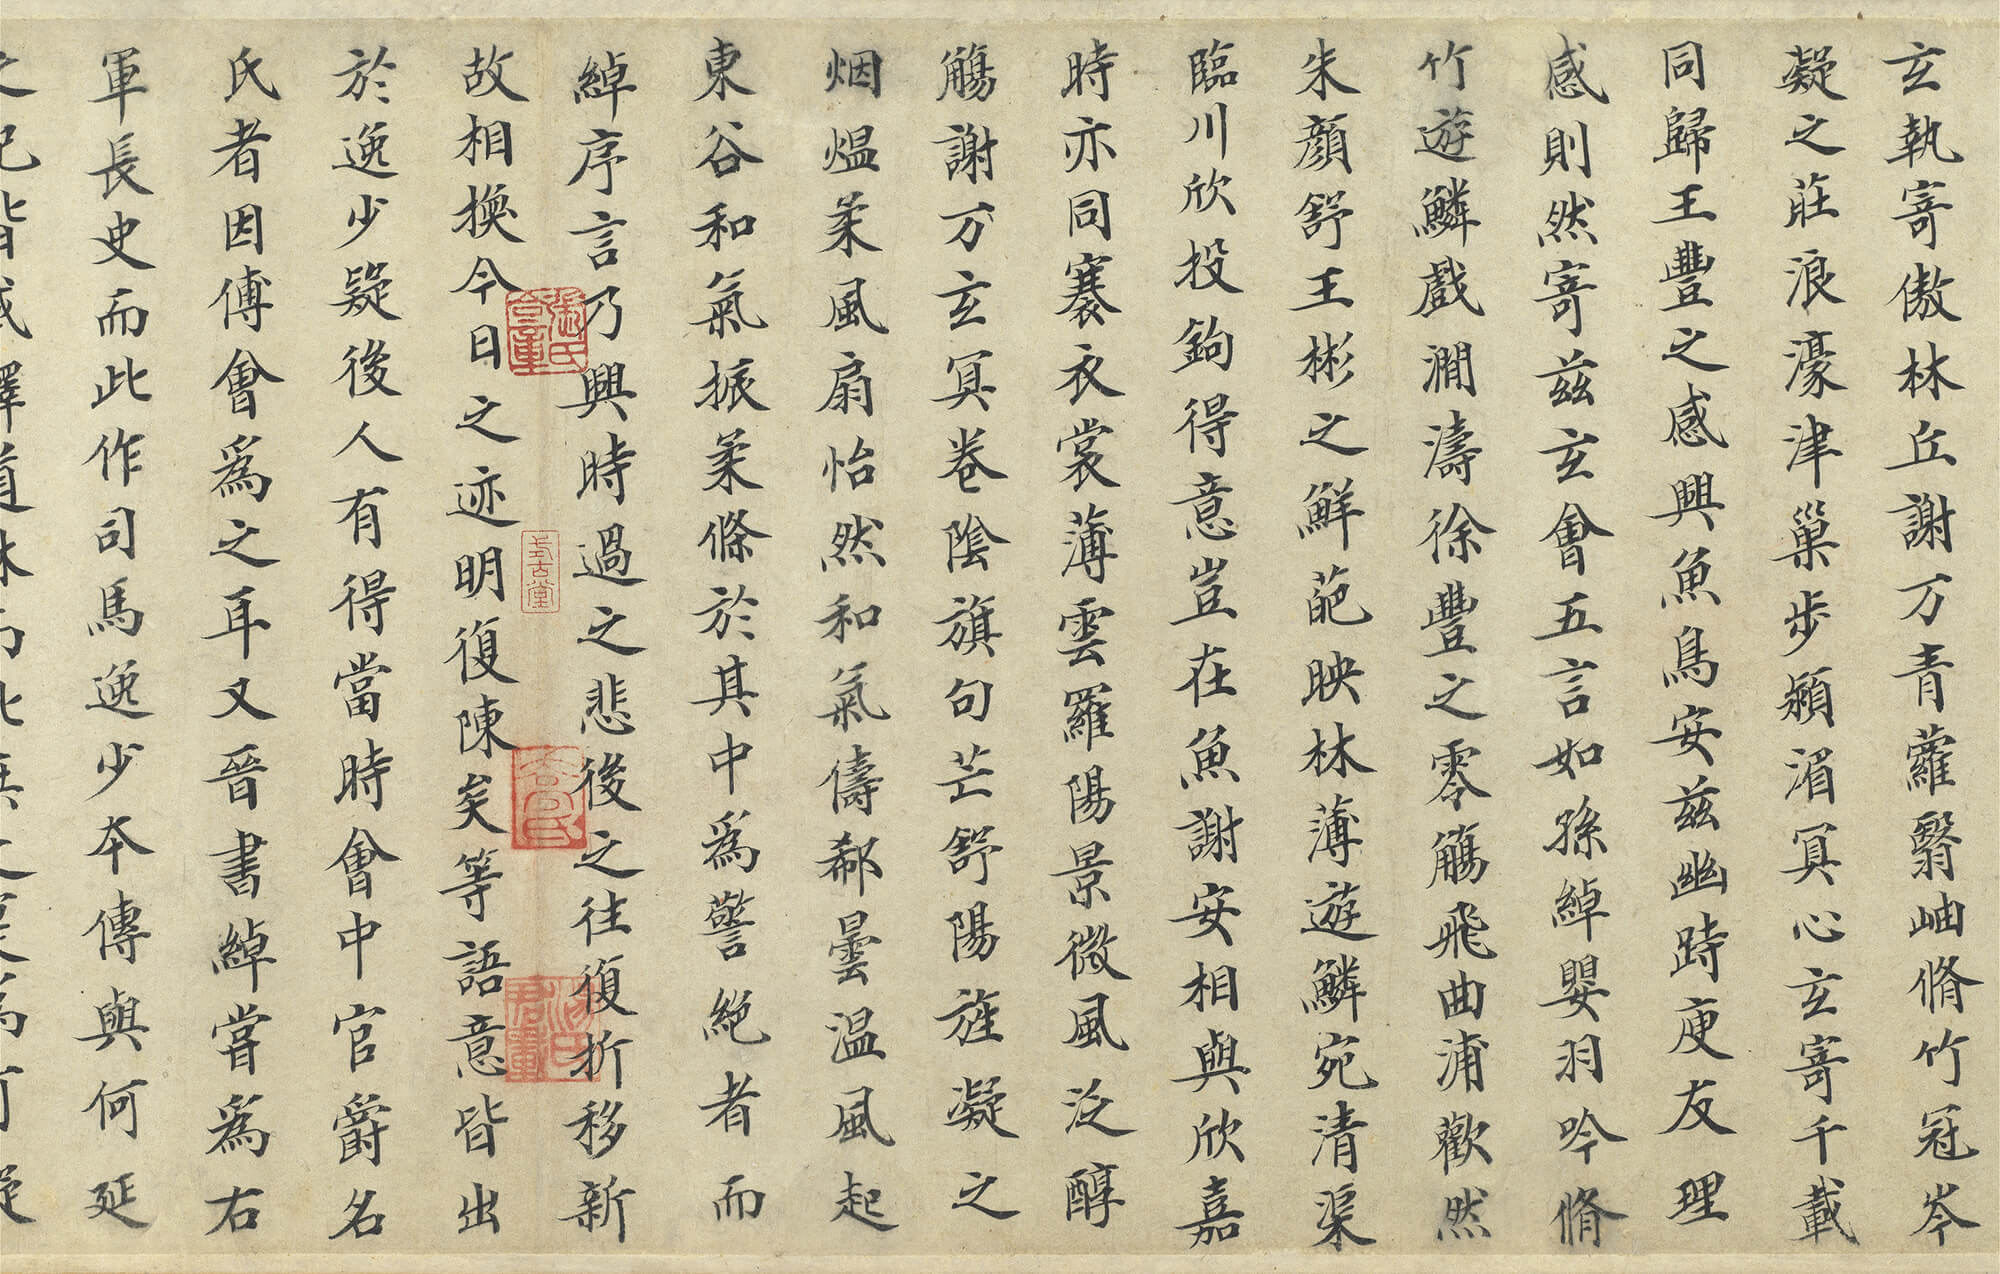 Original Dingwu Copy of the Orchid Pavilion Preface